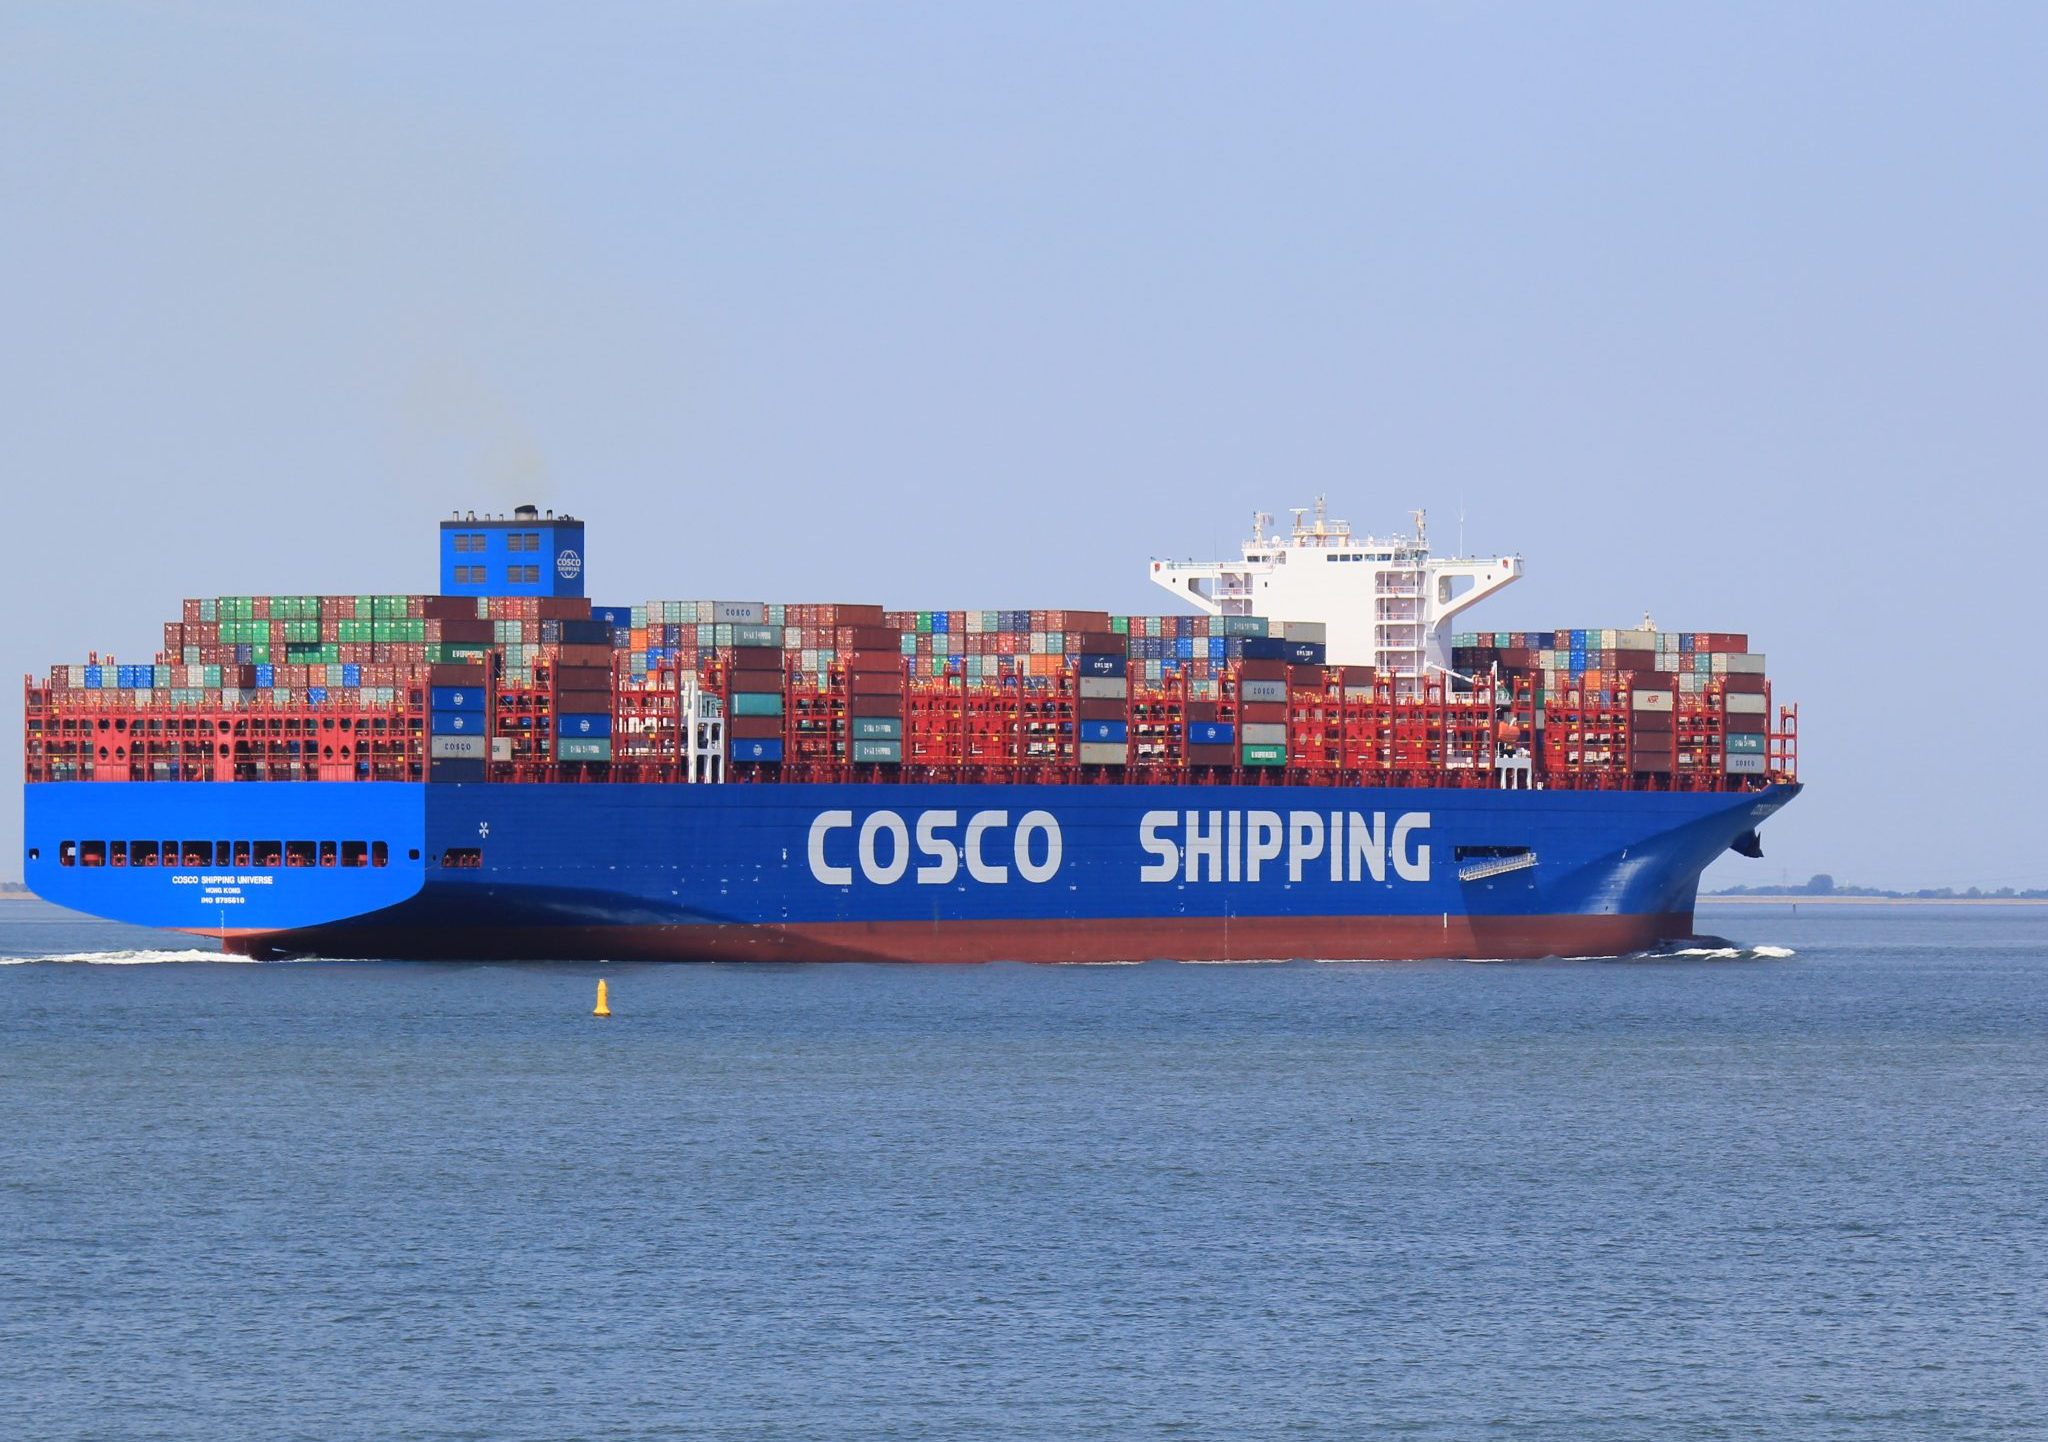 Cosco is het grootste scheepvaartbedrijf van China.